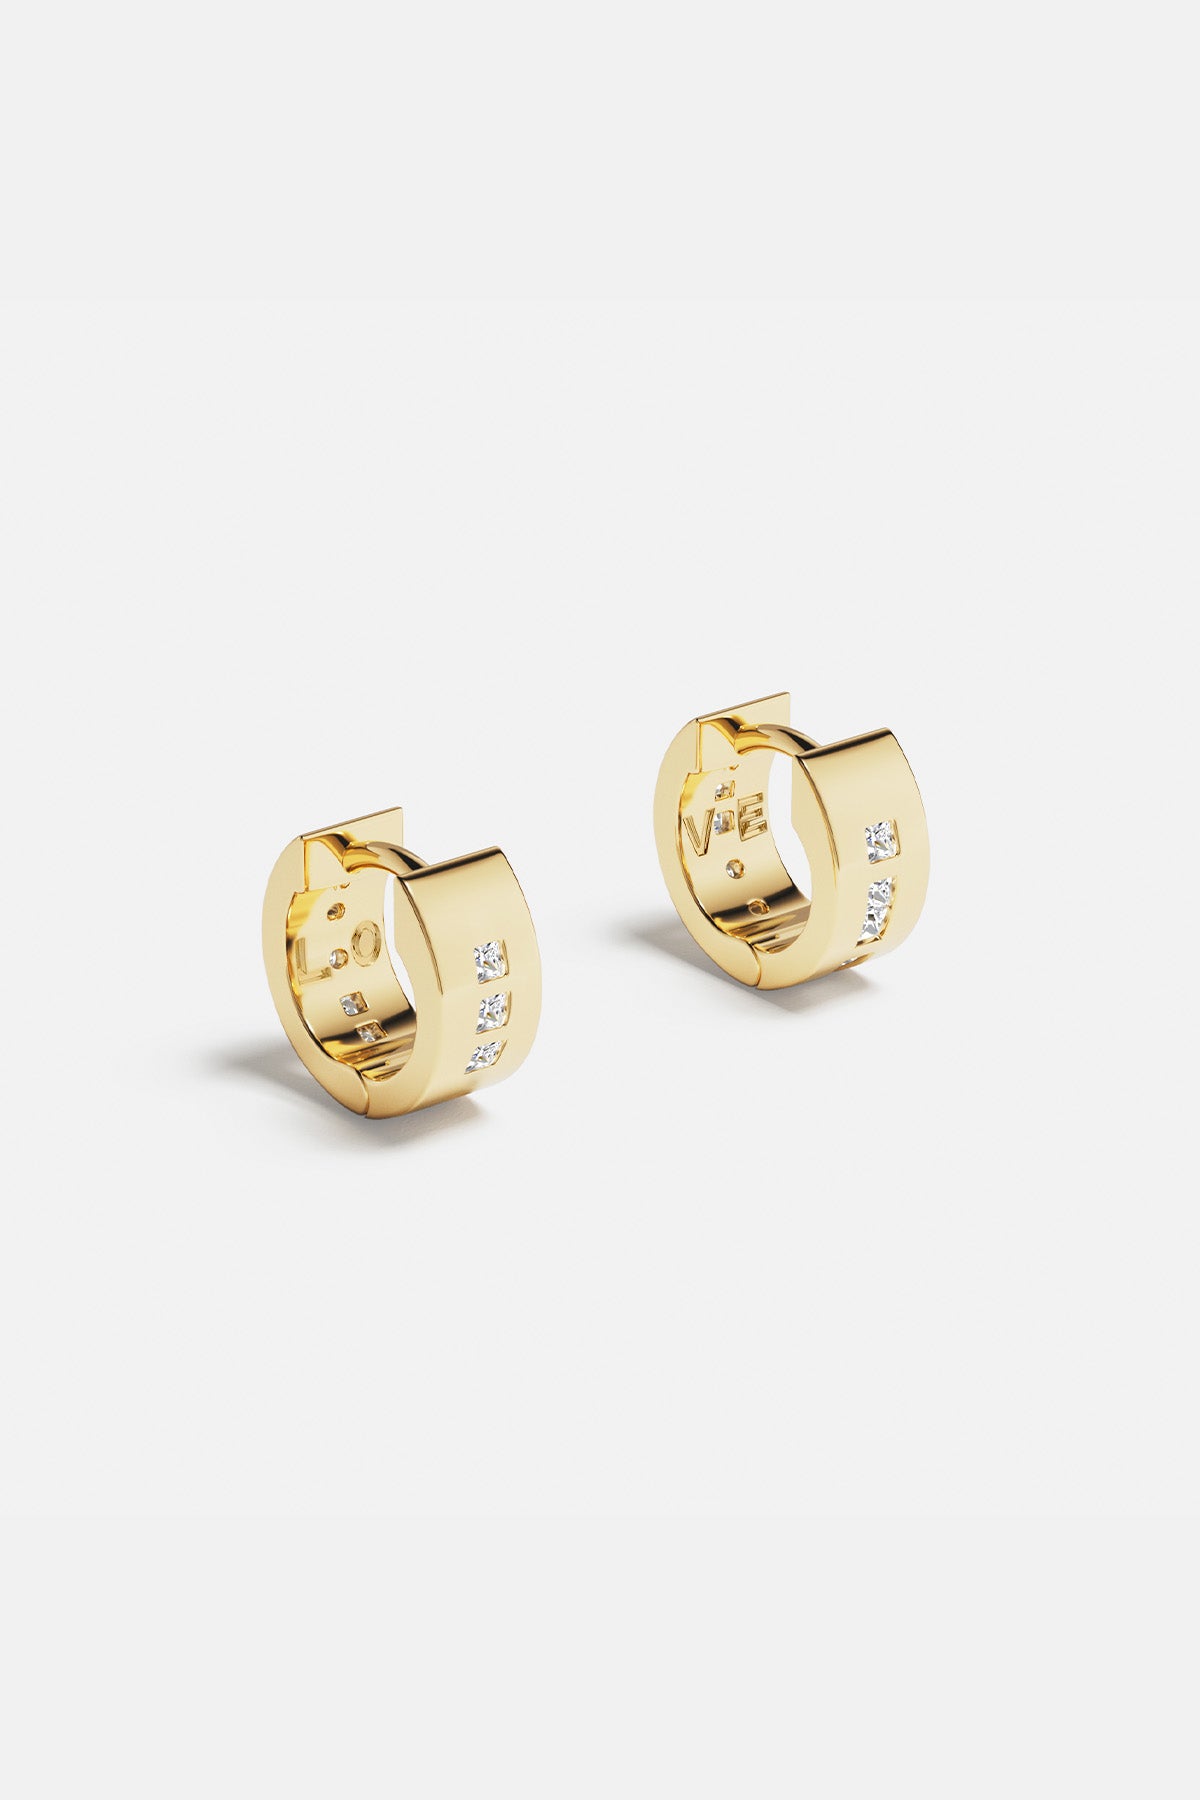 APM Monaco LOVE Morse Code Huggie Earrings in Yellow Gold